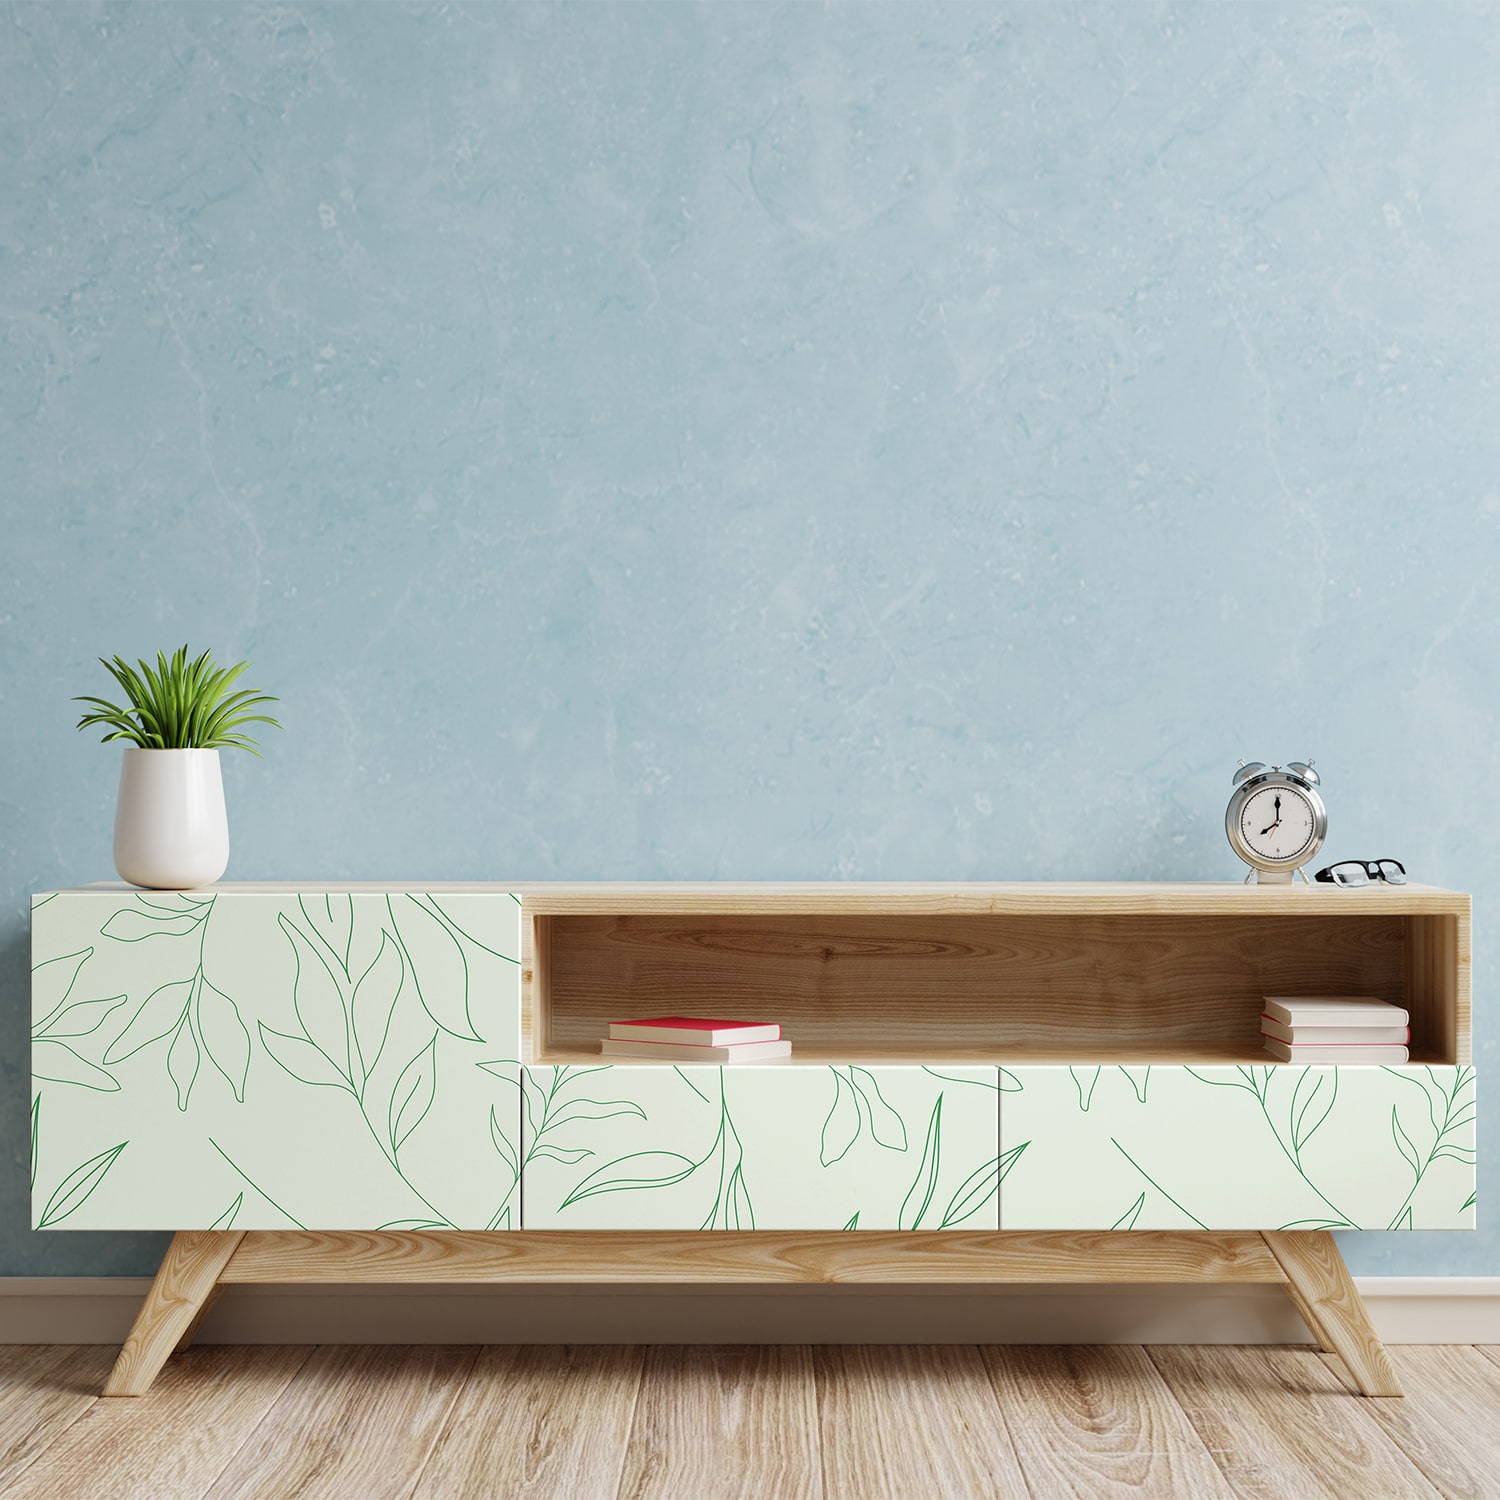 PP101-meuble-papier-peint-adhesif-decoratif-revetement-vinyle-motifs-feuillages-vert-nature-plantes-renovation-meuble-mur-min